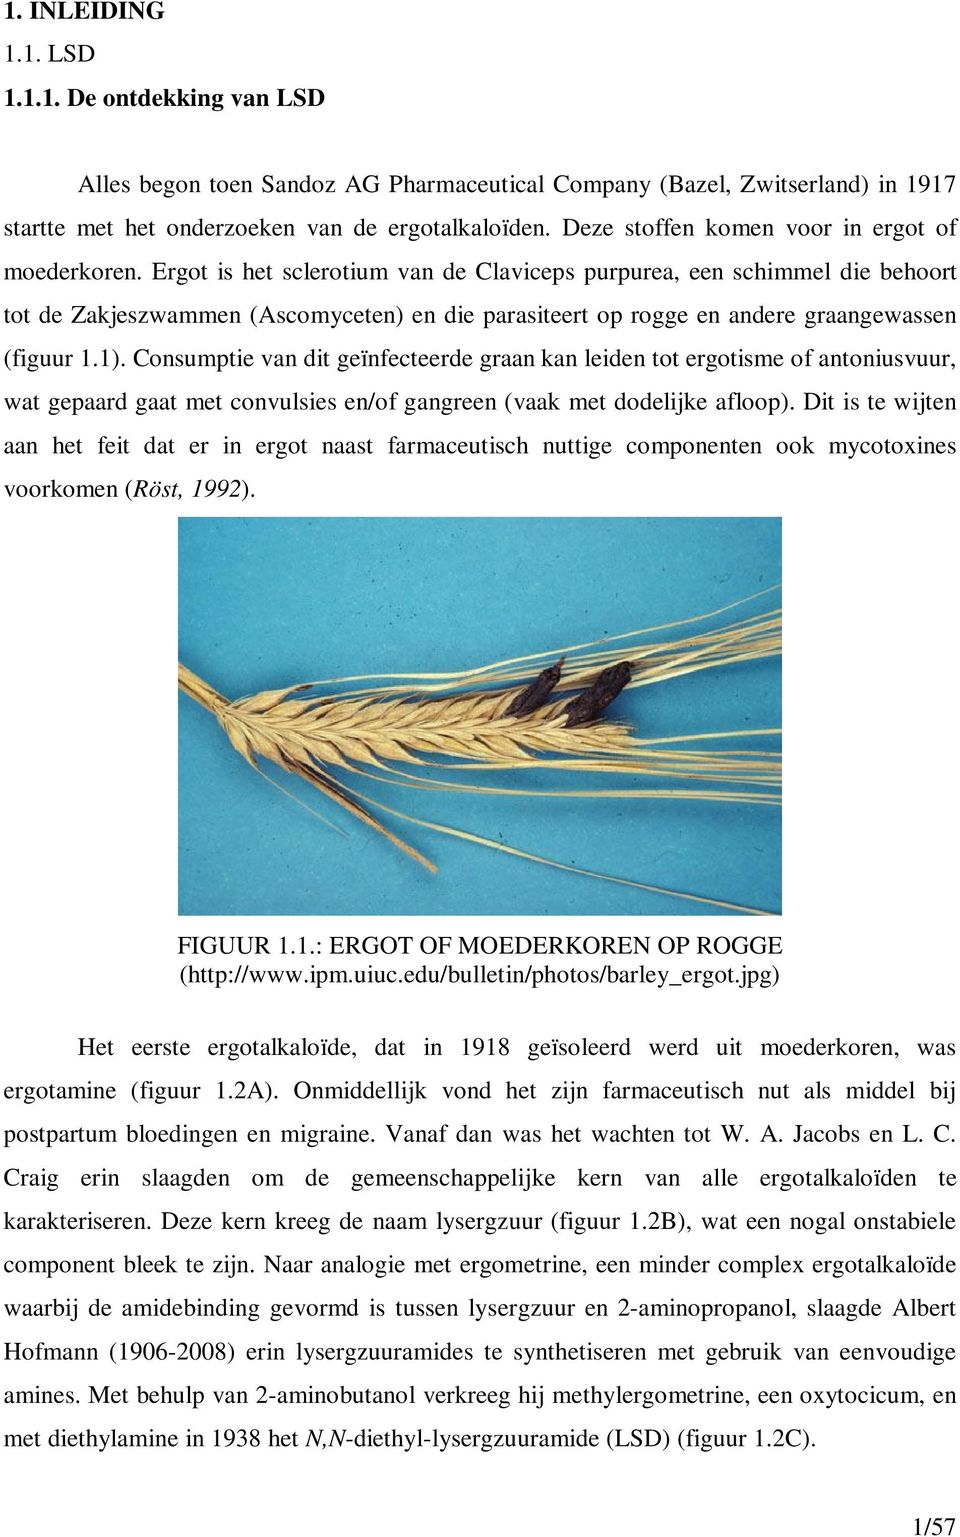 Ergot is het sclerotium van de Claviceps purpurea, een schimmel die behoort tot de Zakjeszwammen (Ascomyceten) en die parasiteert op rogge en andere graangewassen (figuur 1.1).